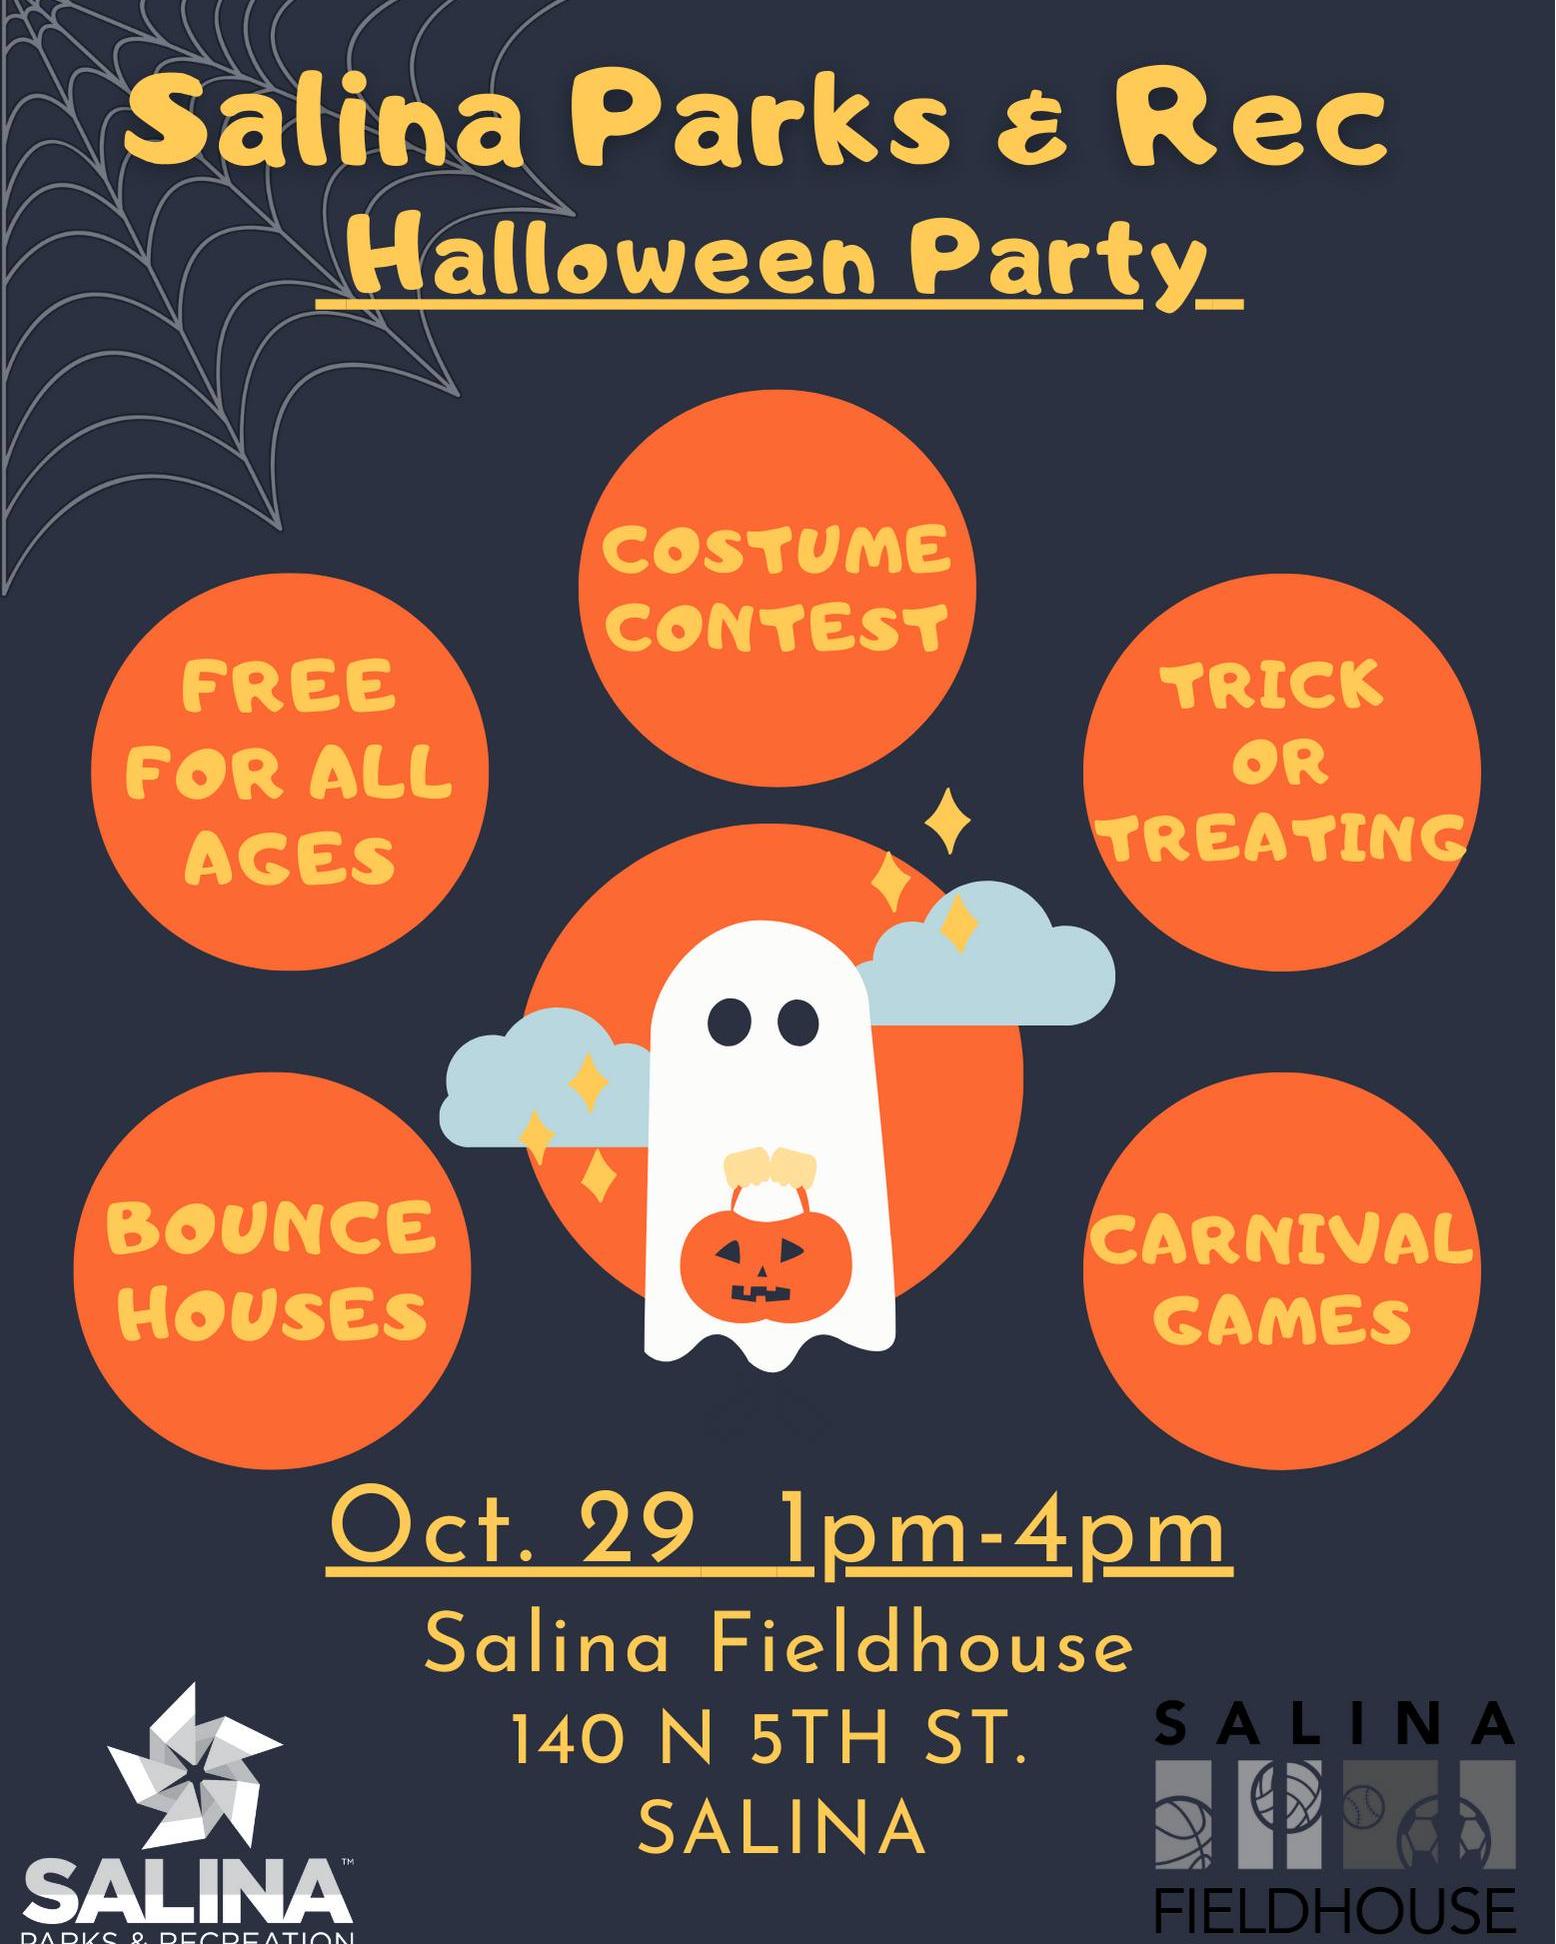 Salina Parks & Rec Halloween Party